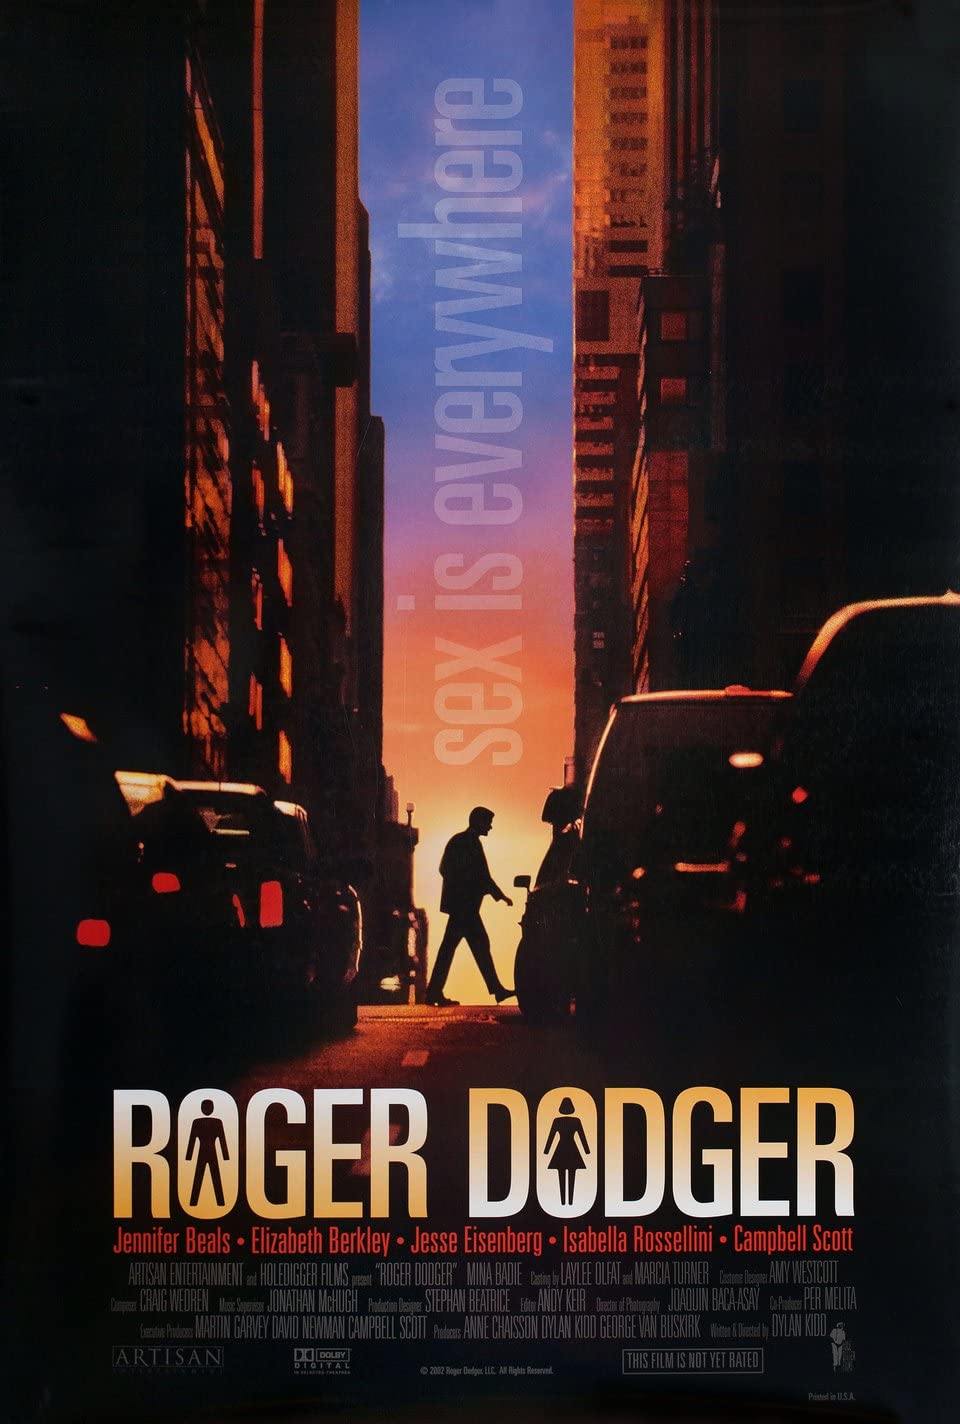 Roger Dodger Main Poster